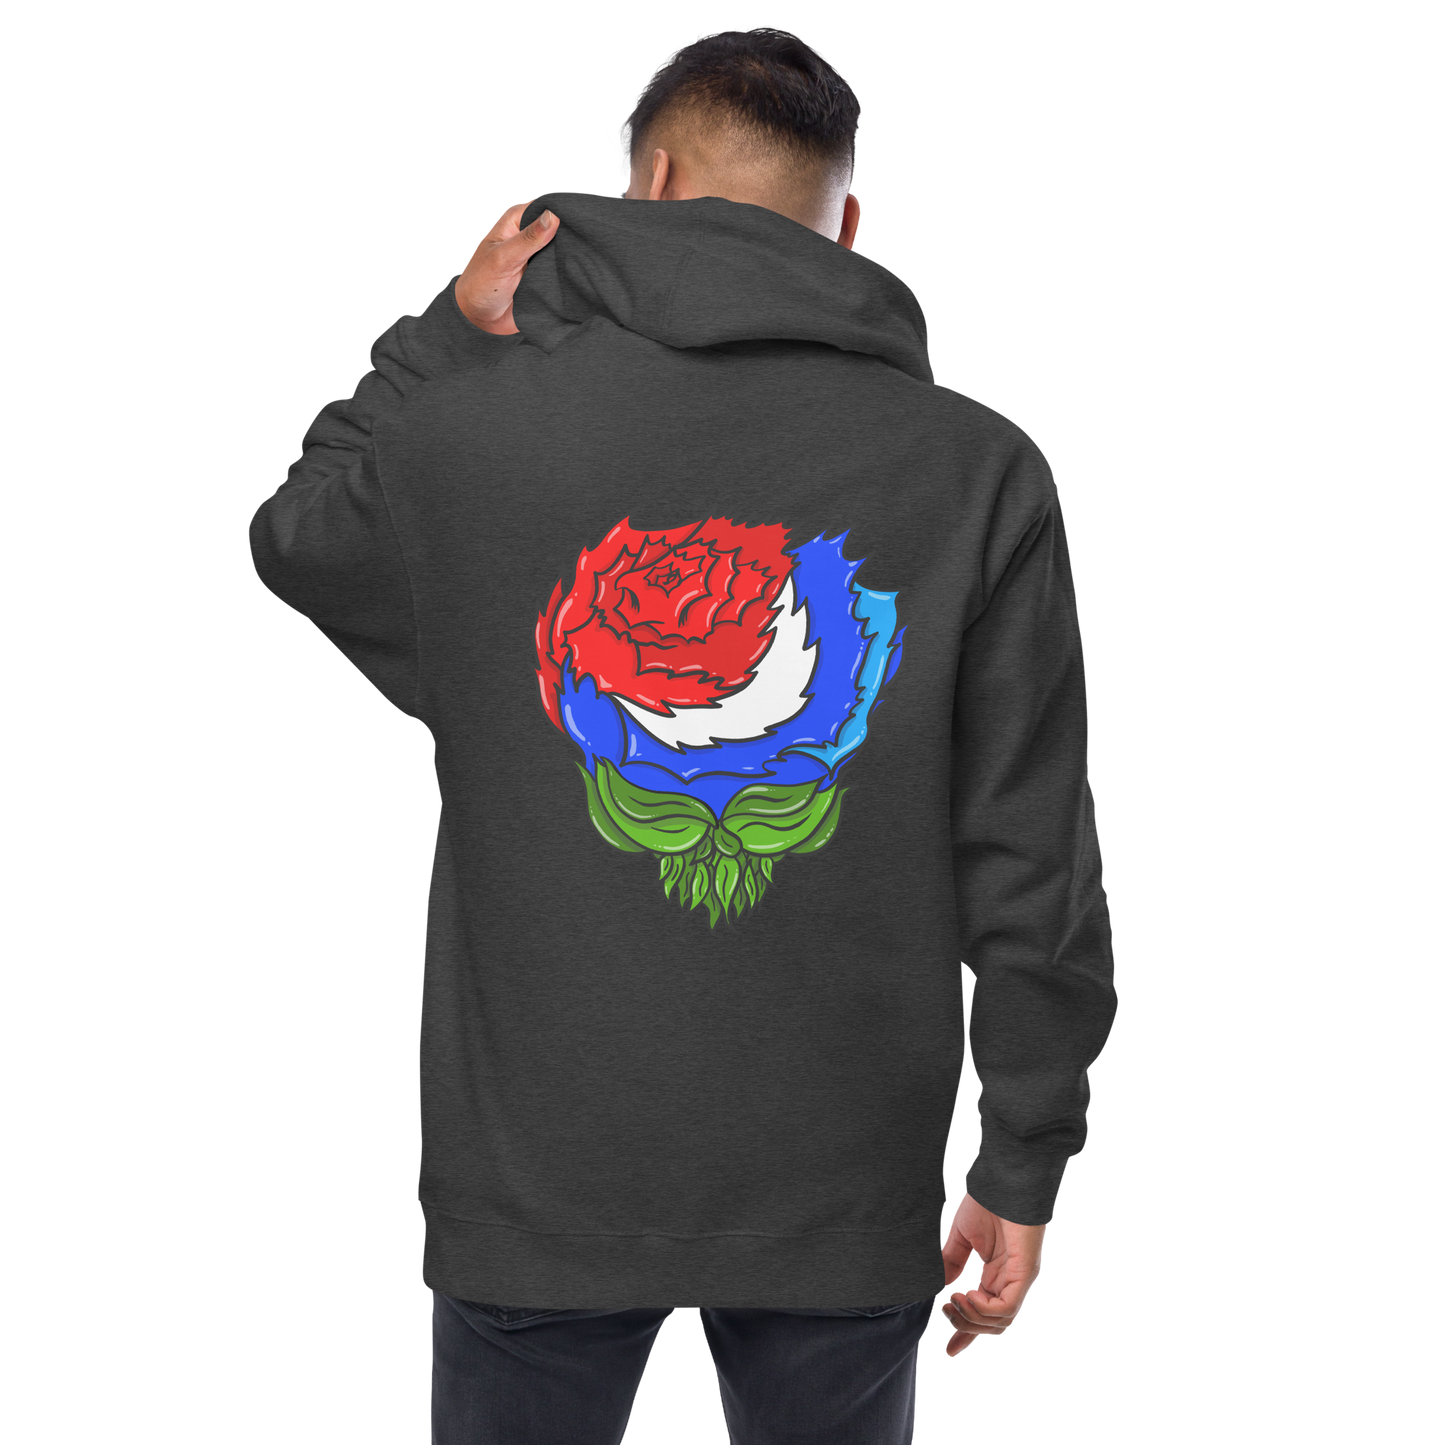 U.S. Blues Rose Independent Brand Unisex fleece zip up hoodie